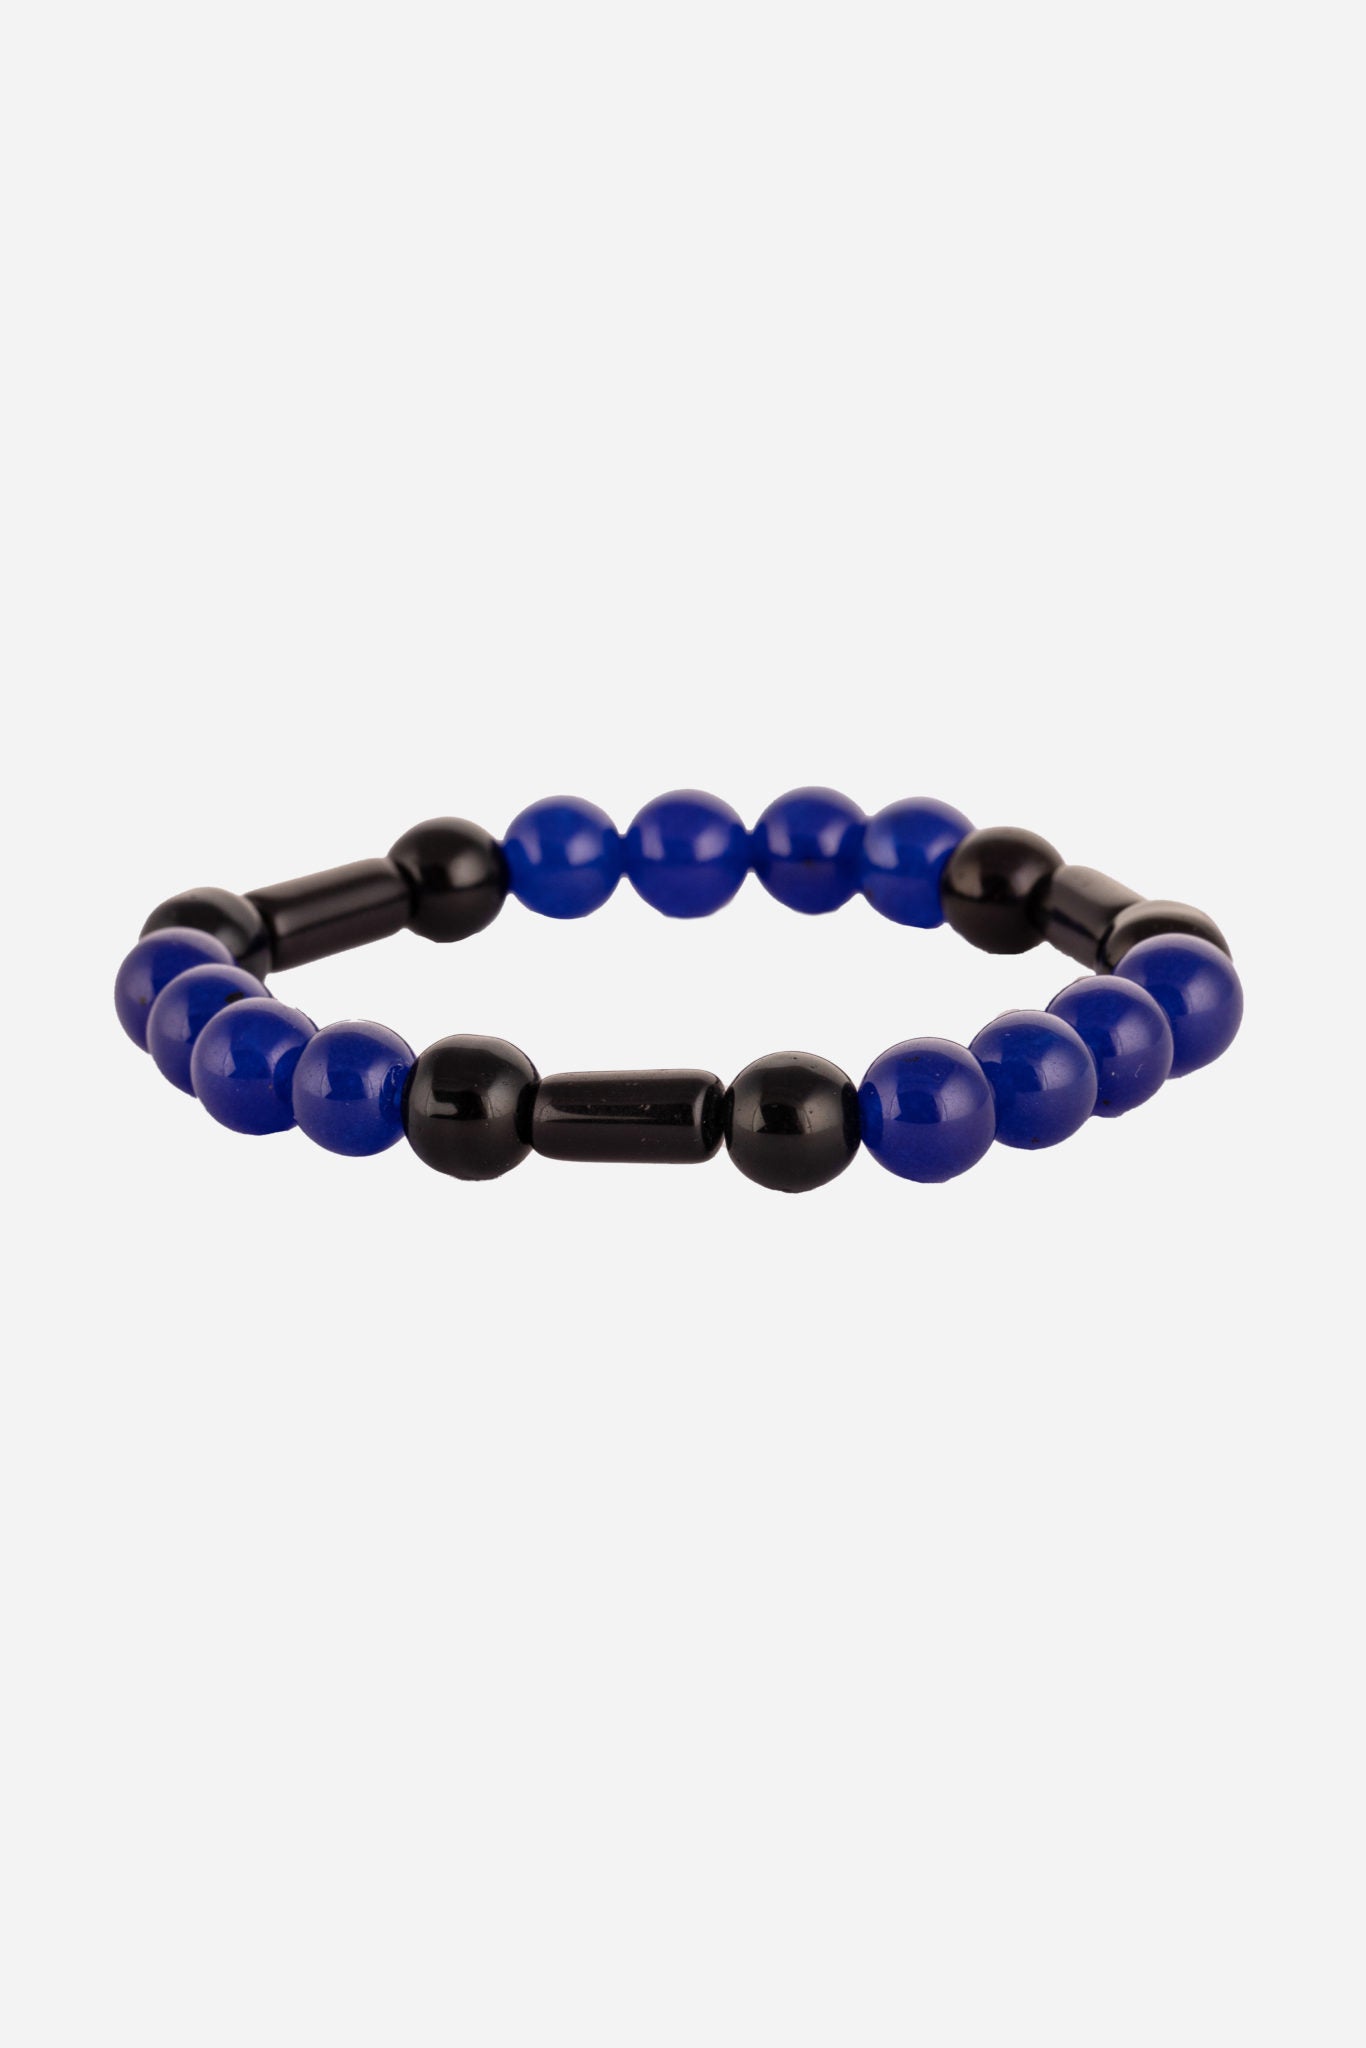 Dark Blue Beaded Bracelet For Wellness